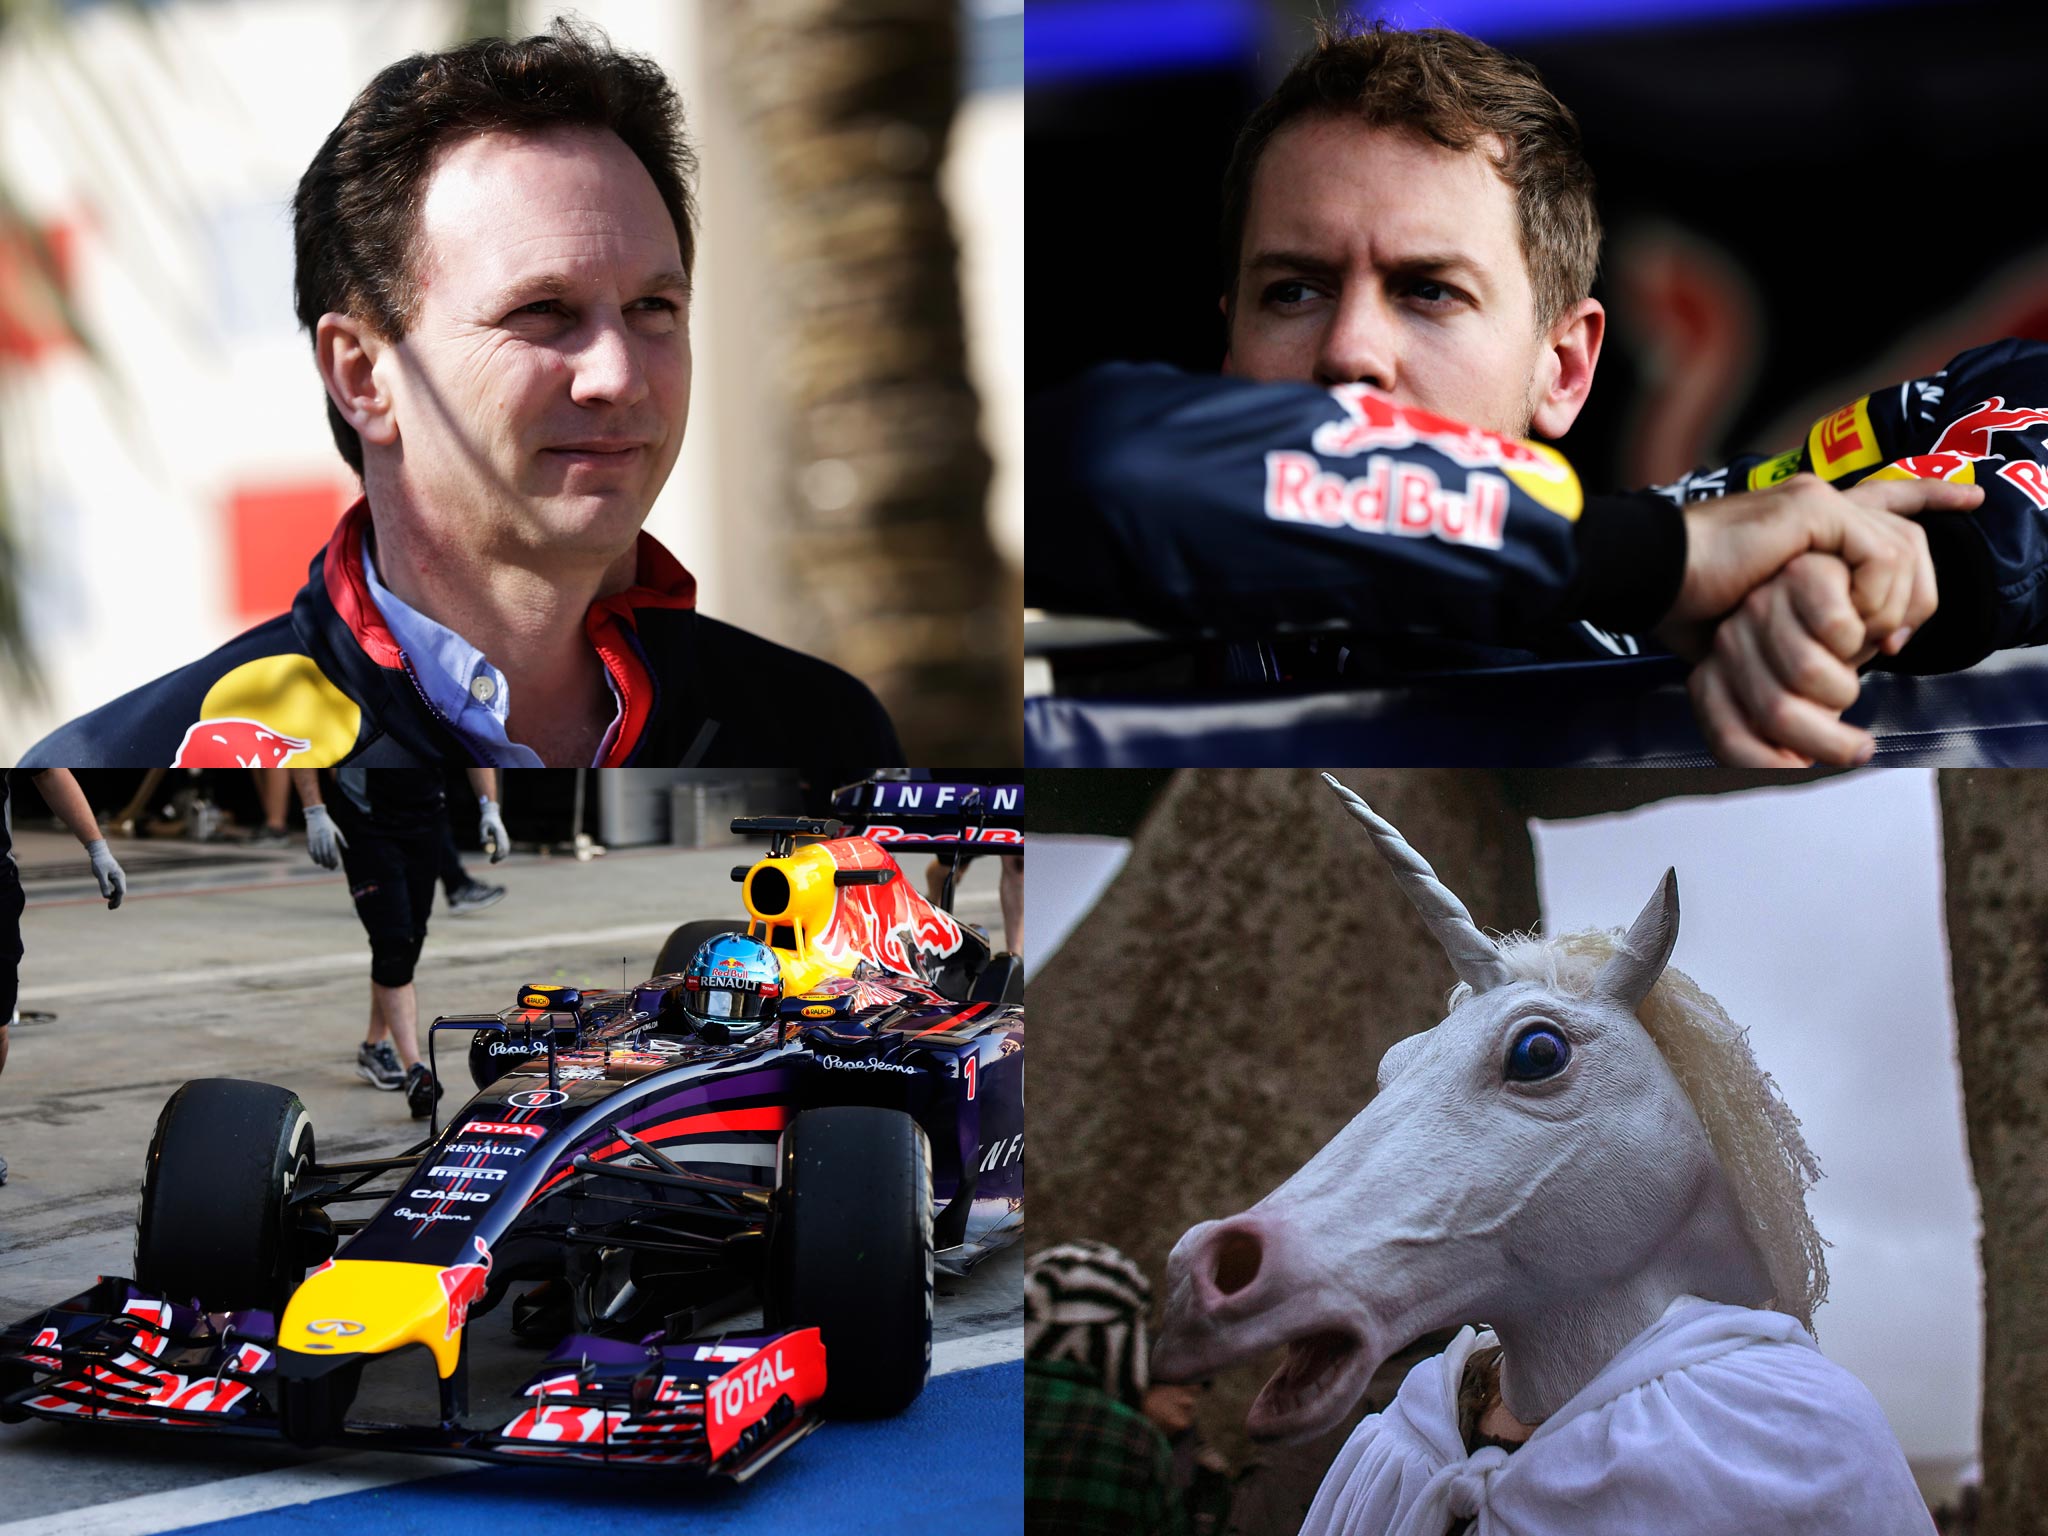 Christian Horner, Sebastian Vettel, the RB10 and a unicorn